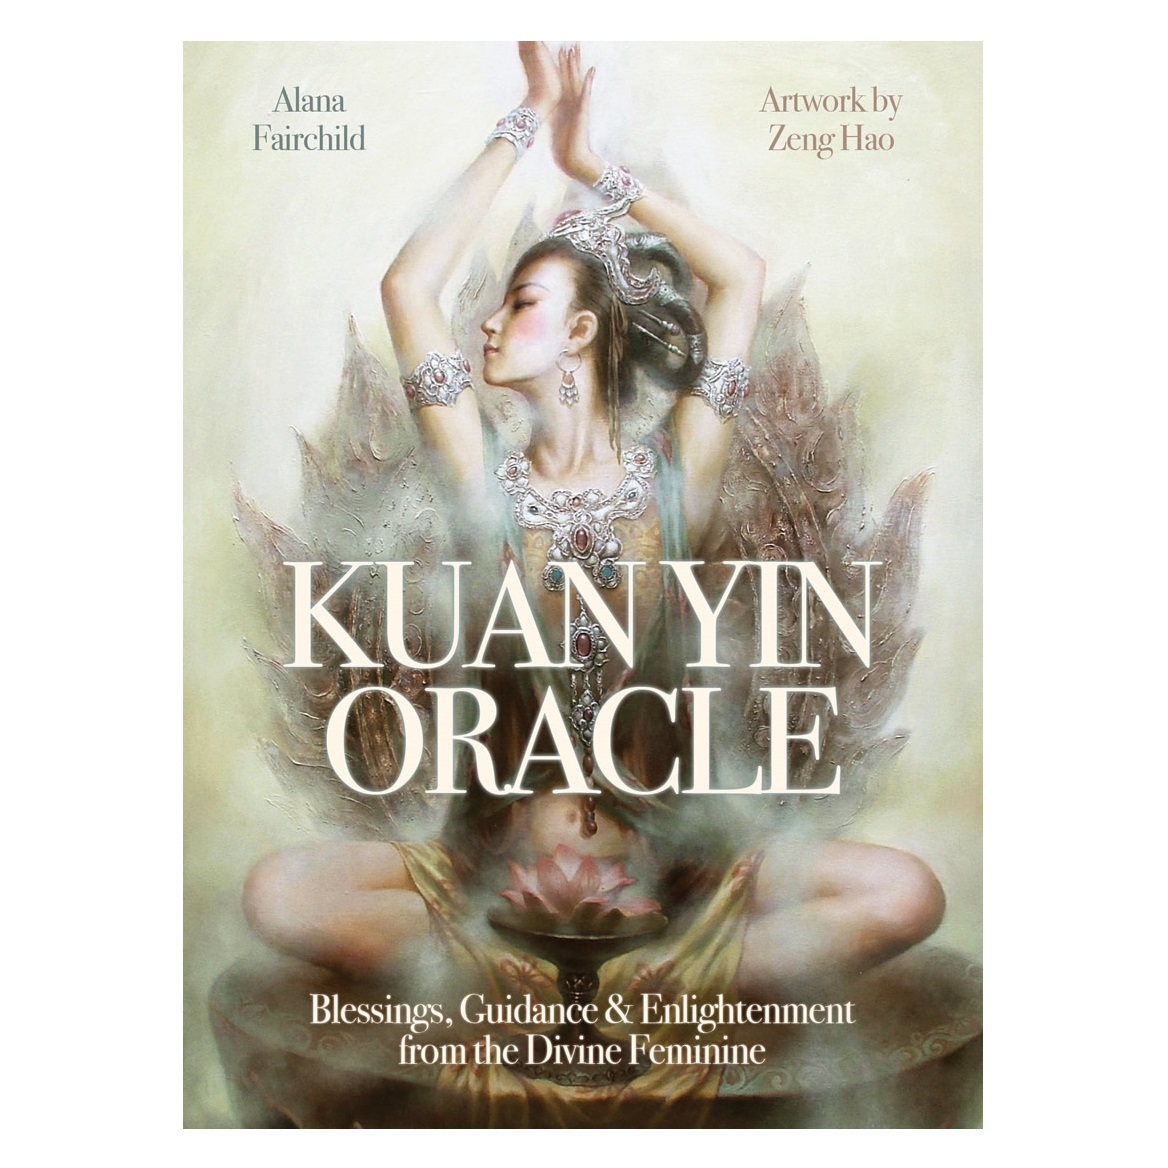 

Оракул богини Гуан Инь (Kuan Yin Oracle)